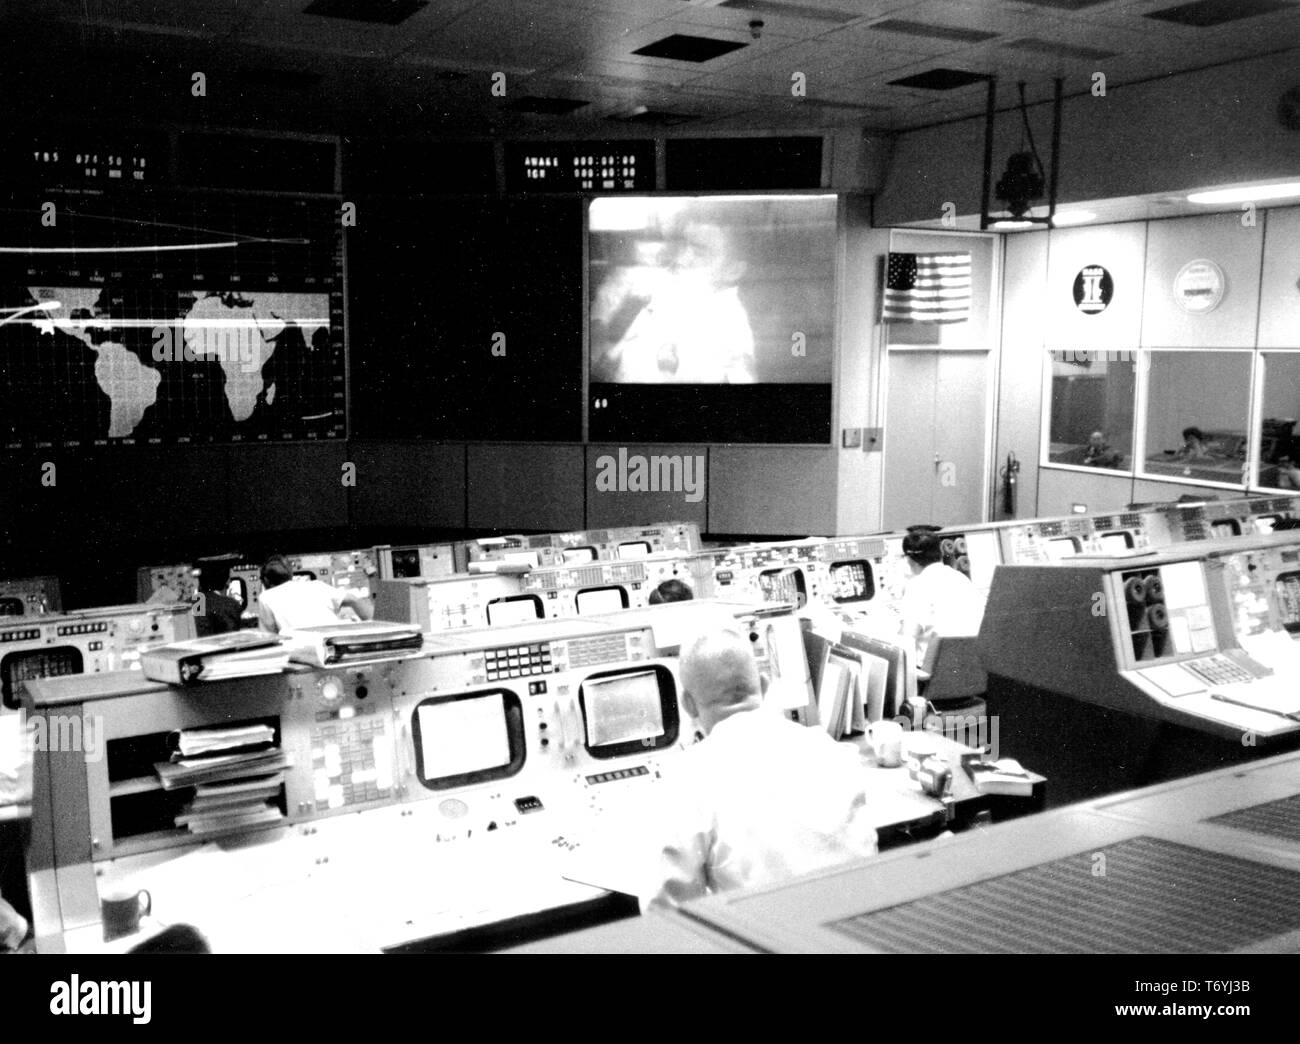 Fotografia della missione Apollo 13 Operations Control Room nella missione del Centro di controllo presso il veicolo spaziale con equipaggio centro, Huston, Texas, Eugene F. Kranz e Fred W. Haise Jr, 1970. Immagine cortesia Nazionale Aeronautica e Spaziale Administration (NASA). () Foto Stock